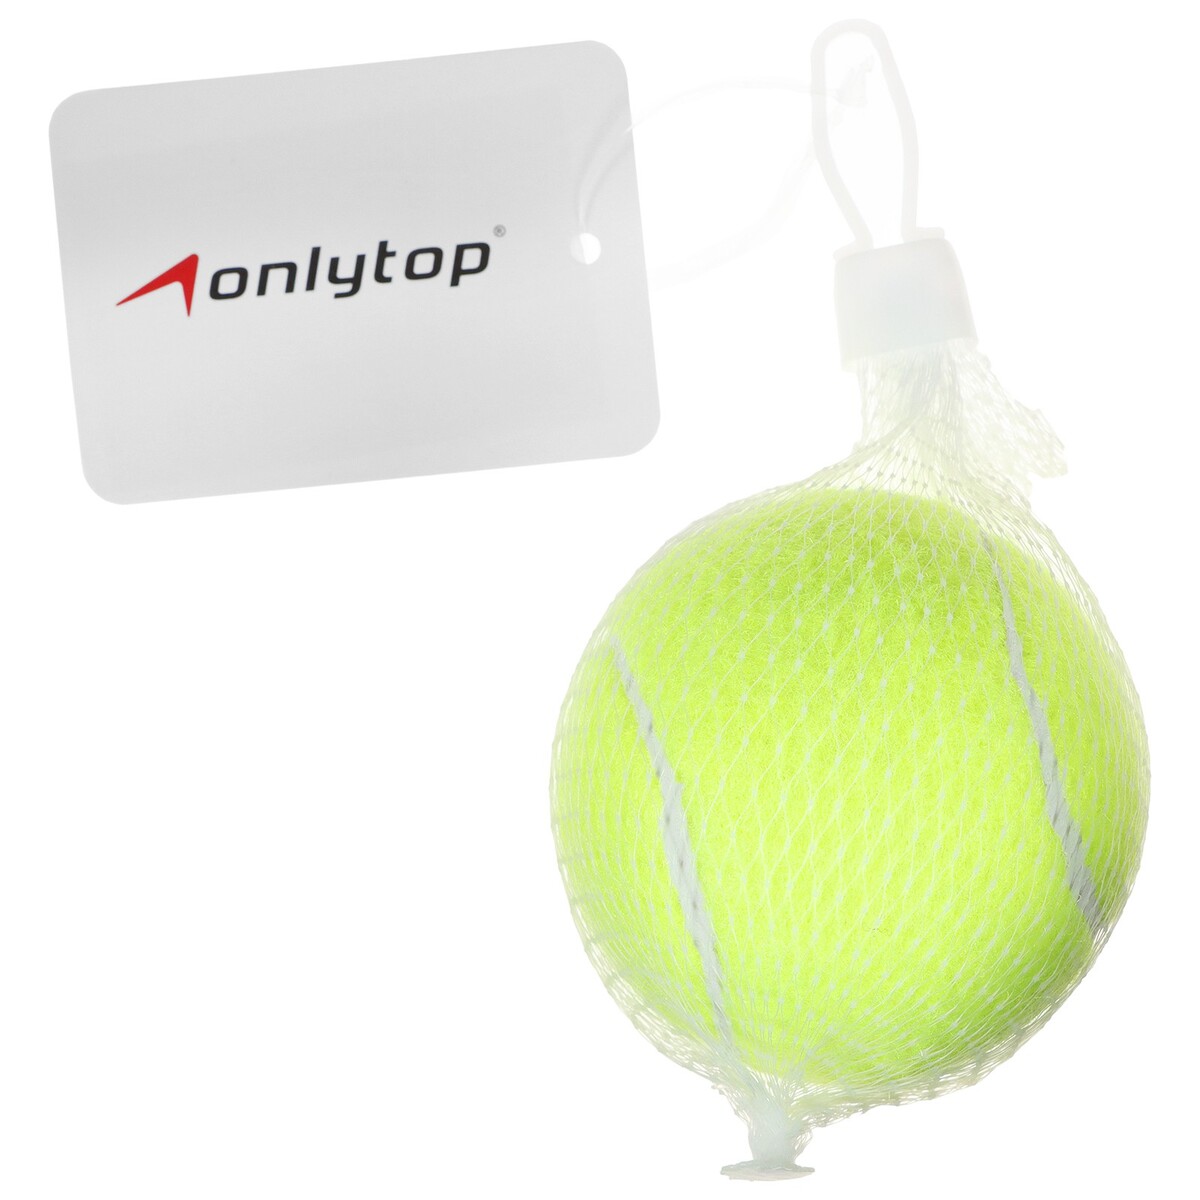 фото Мяч для большого тенниса onlytop № 929, тренировочный, цвет желтый